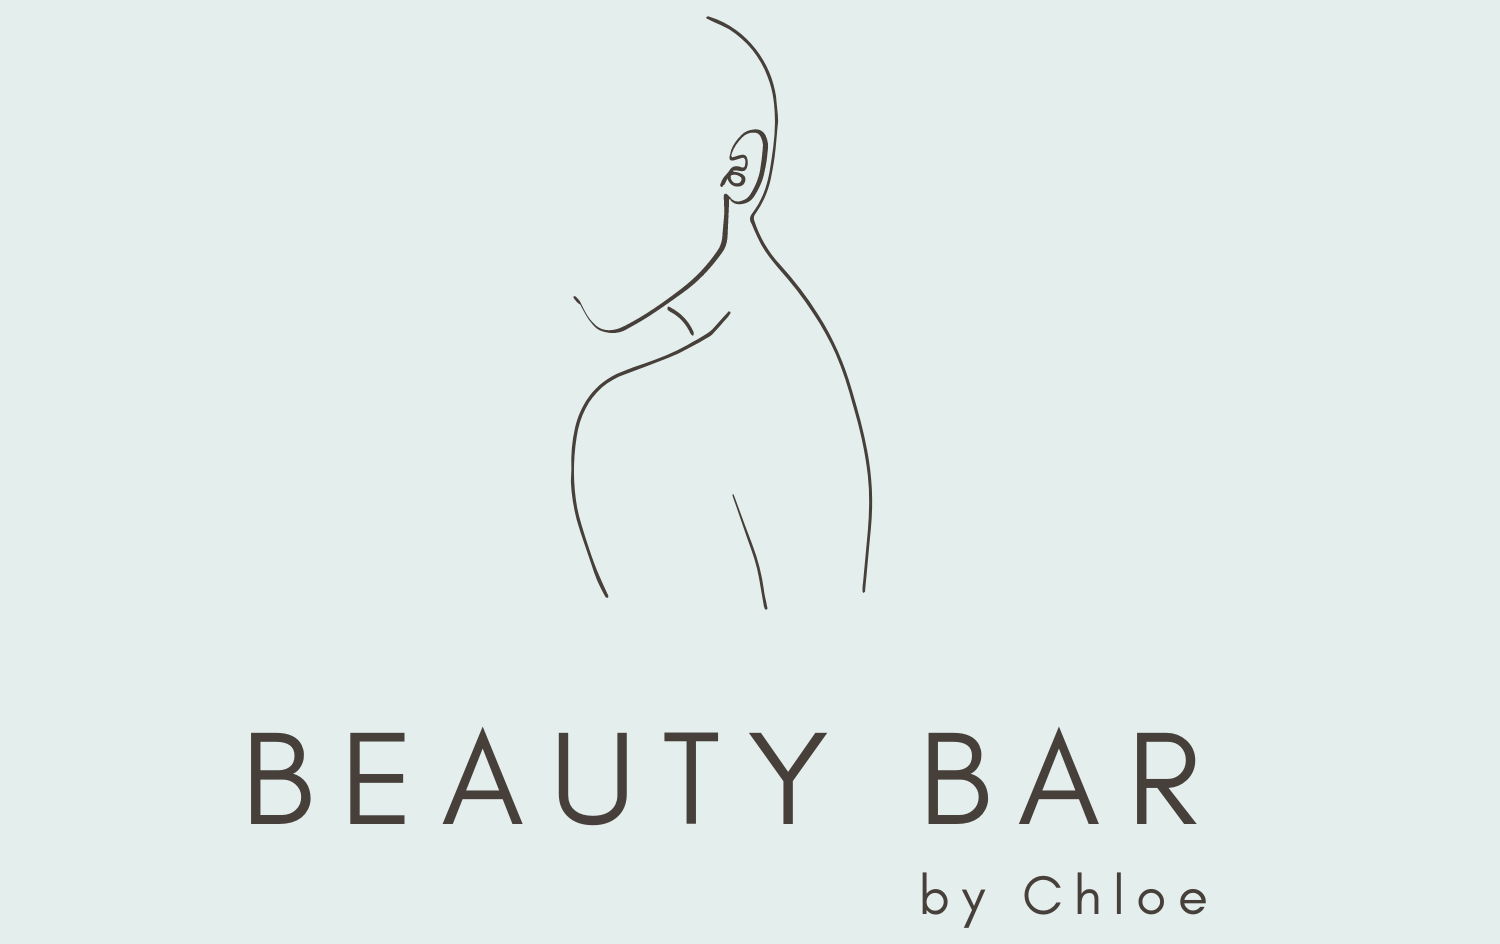 Beauty Bar by Chloe